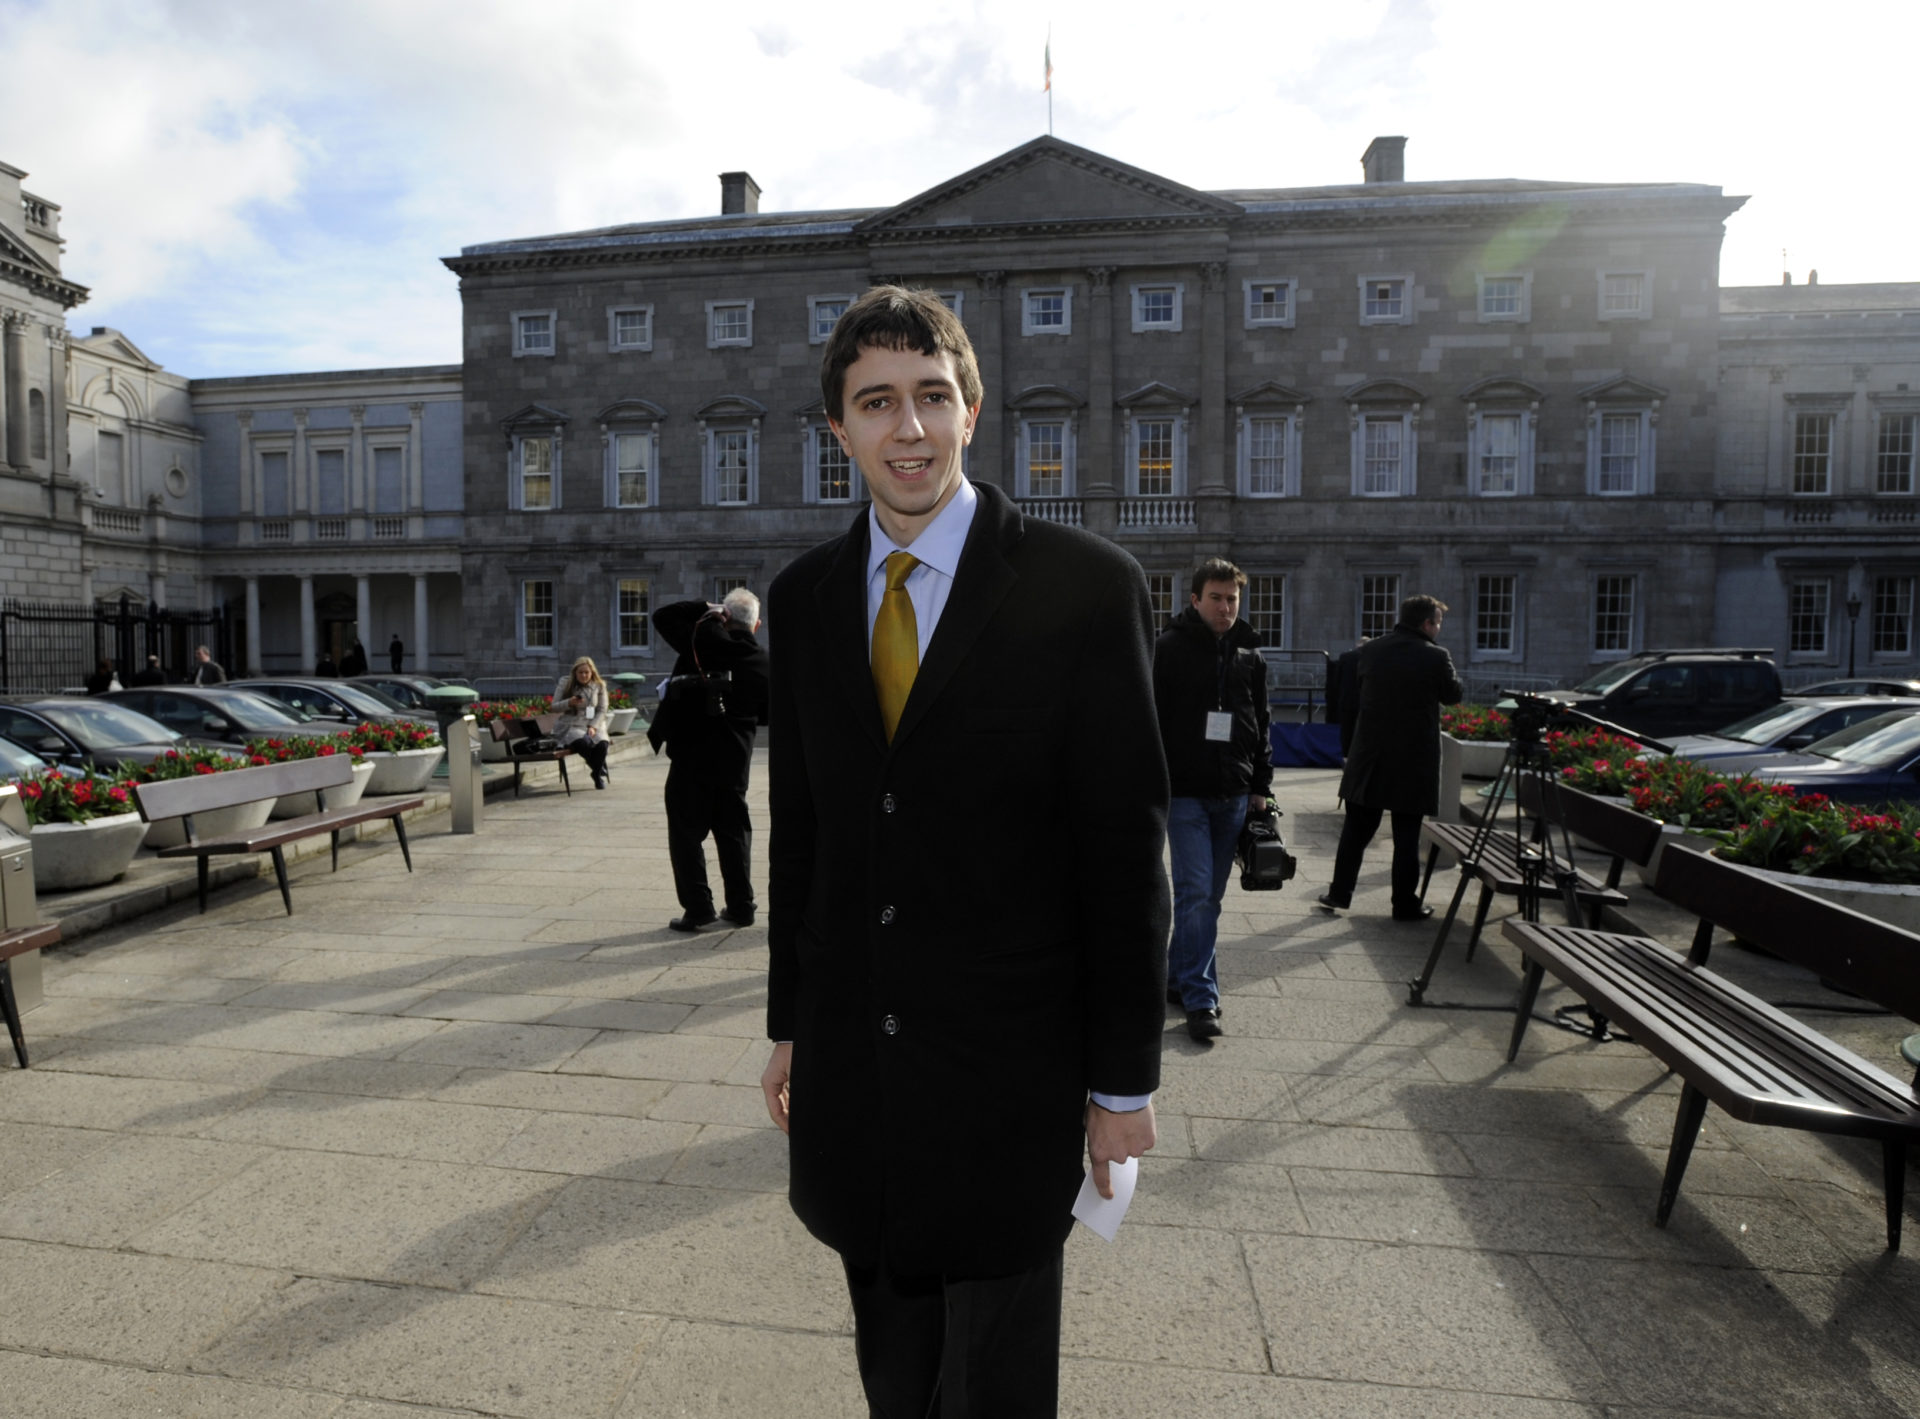 Simon Harris outside Leinster House on his first day as a TD, 09/03/2011. Image: Sasko Lazarov/Photocall Ireland